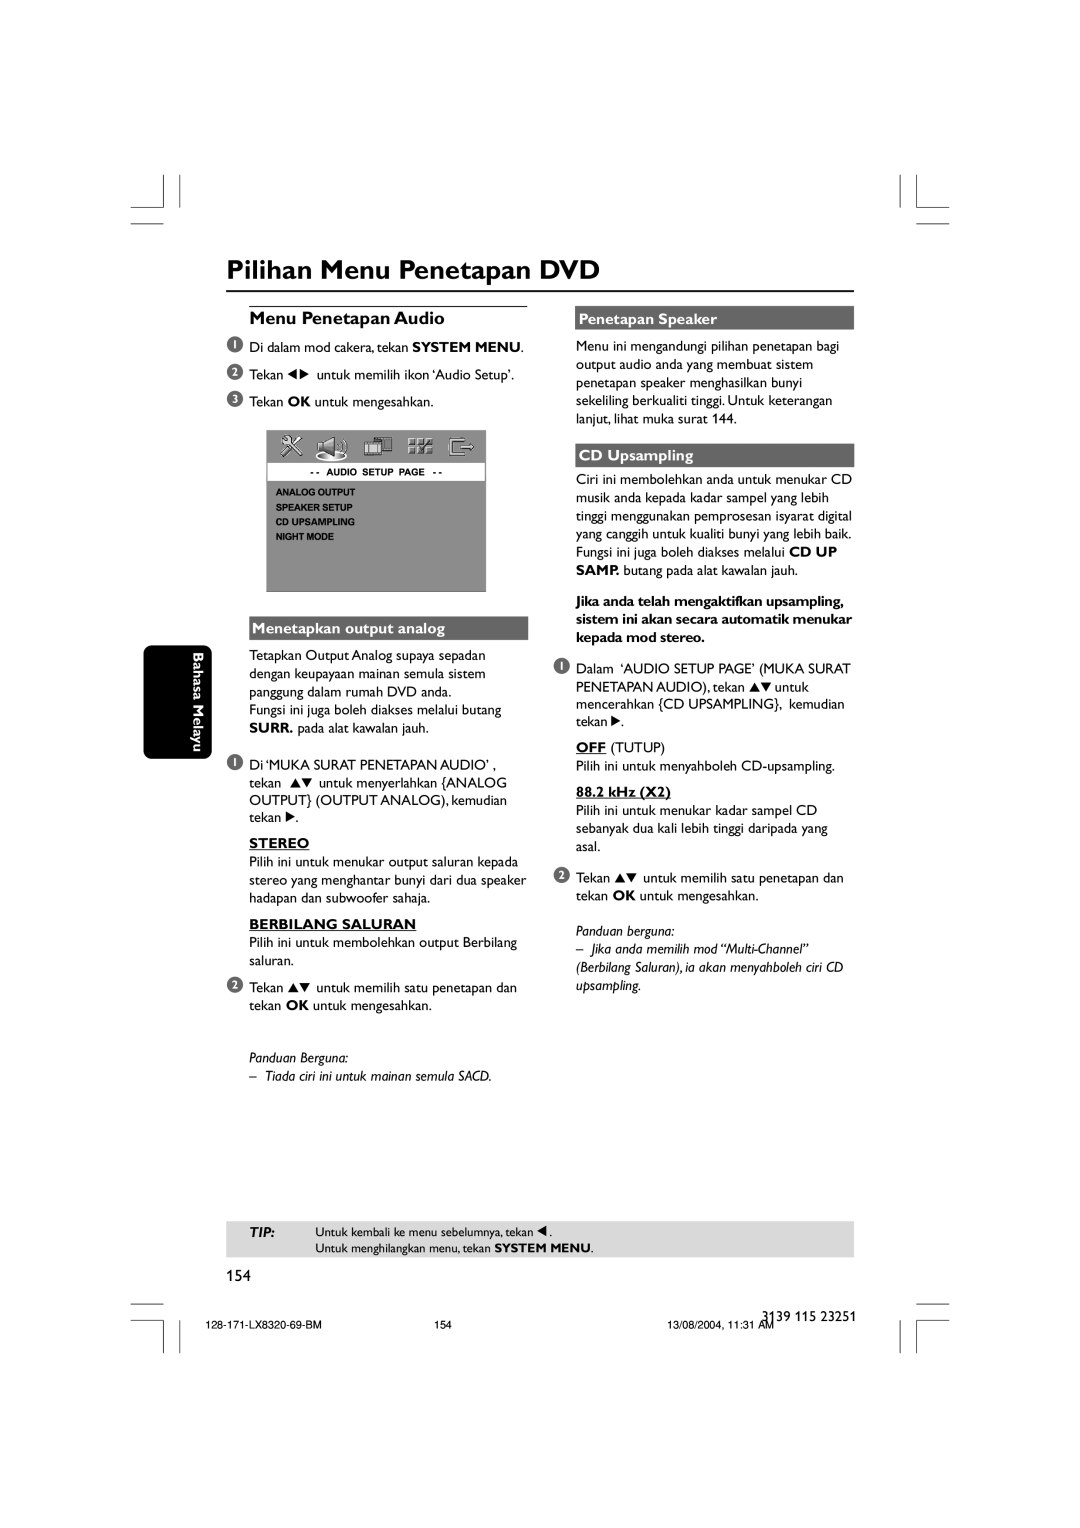 Philips LX8320SA Pilihan Menu Penetapan DVD, Penetapan Speaker, Bahasa Melayu, Menetapkan output analog, Stereo, 88.2 kHz 